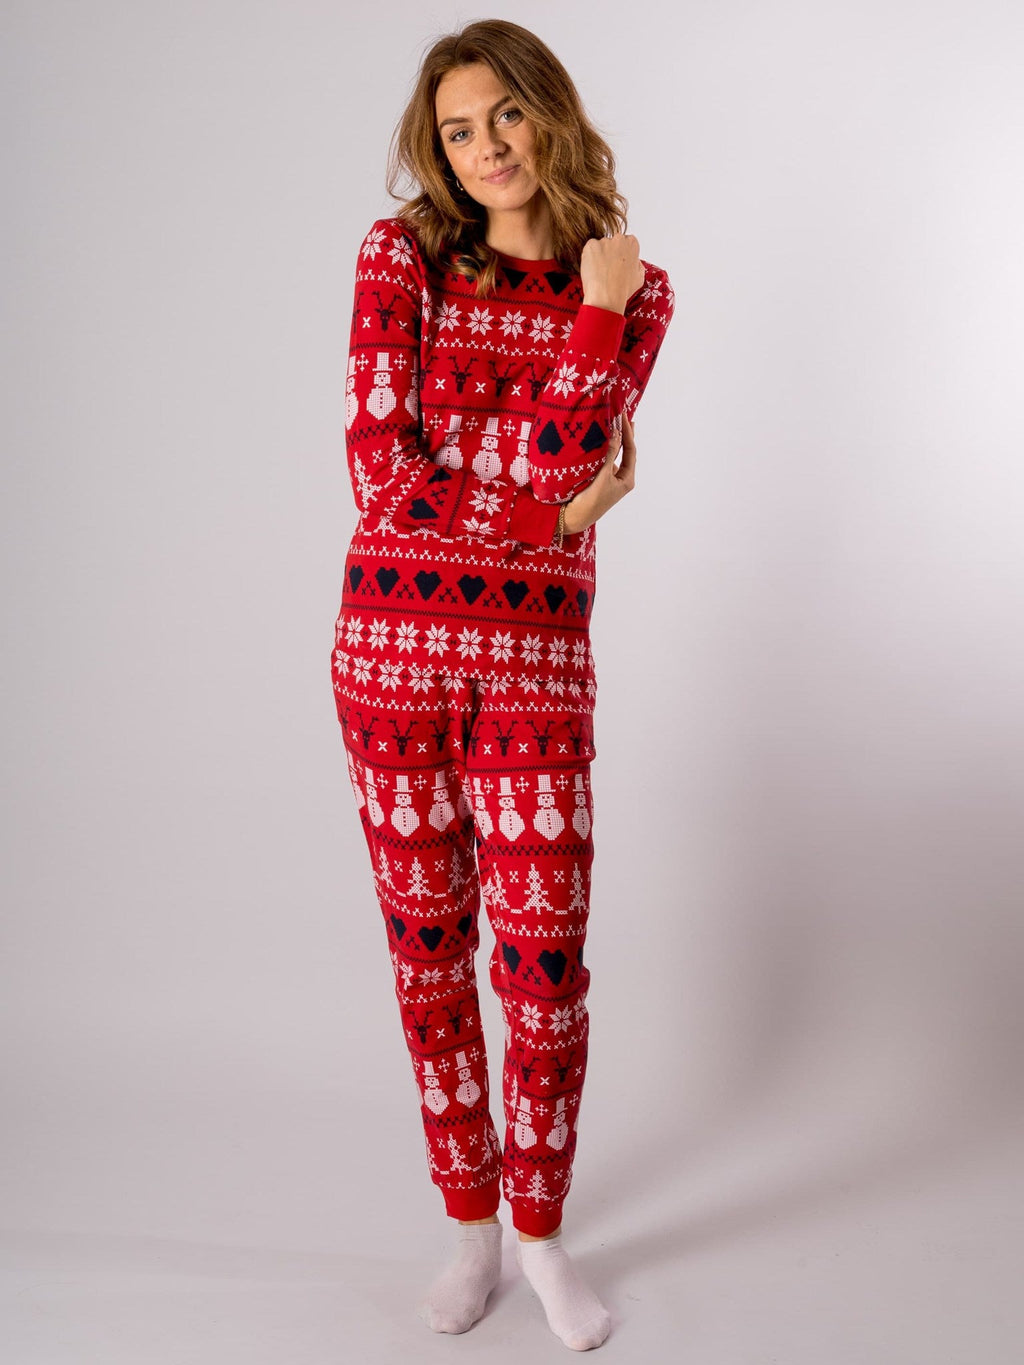 Snowflake Women Pajamas - Red